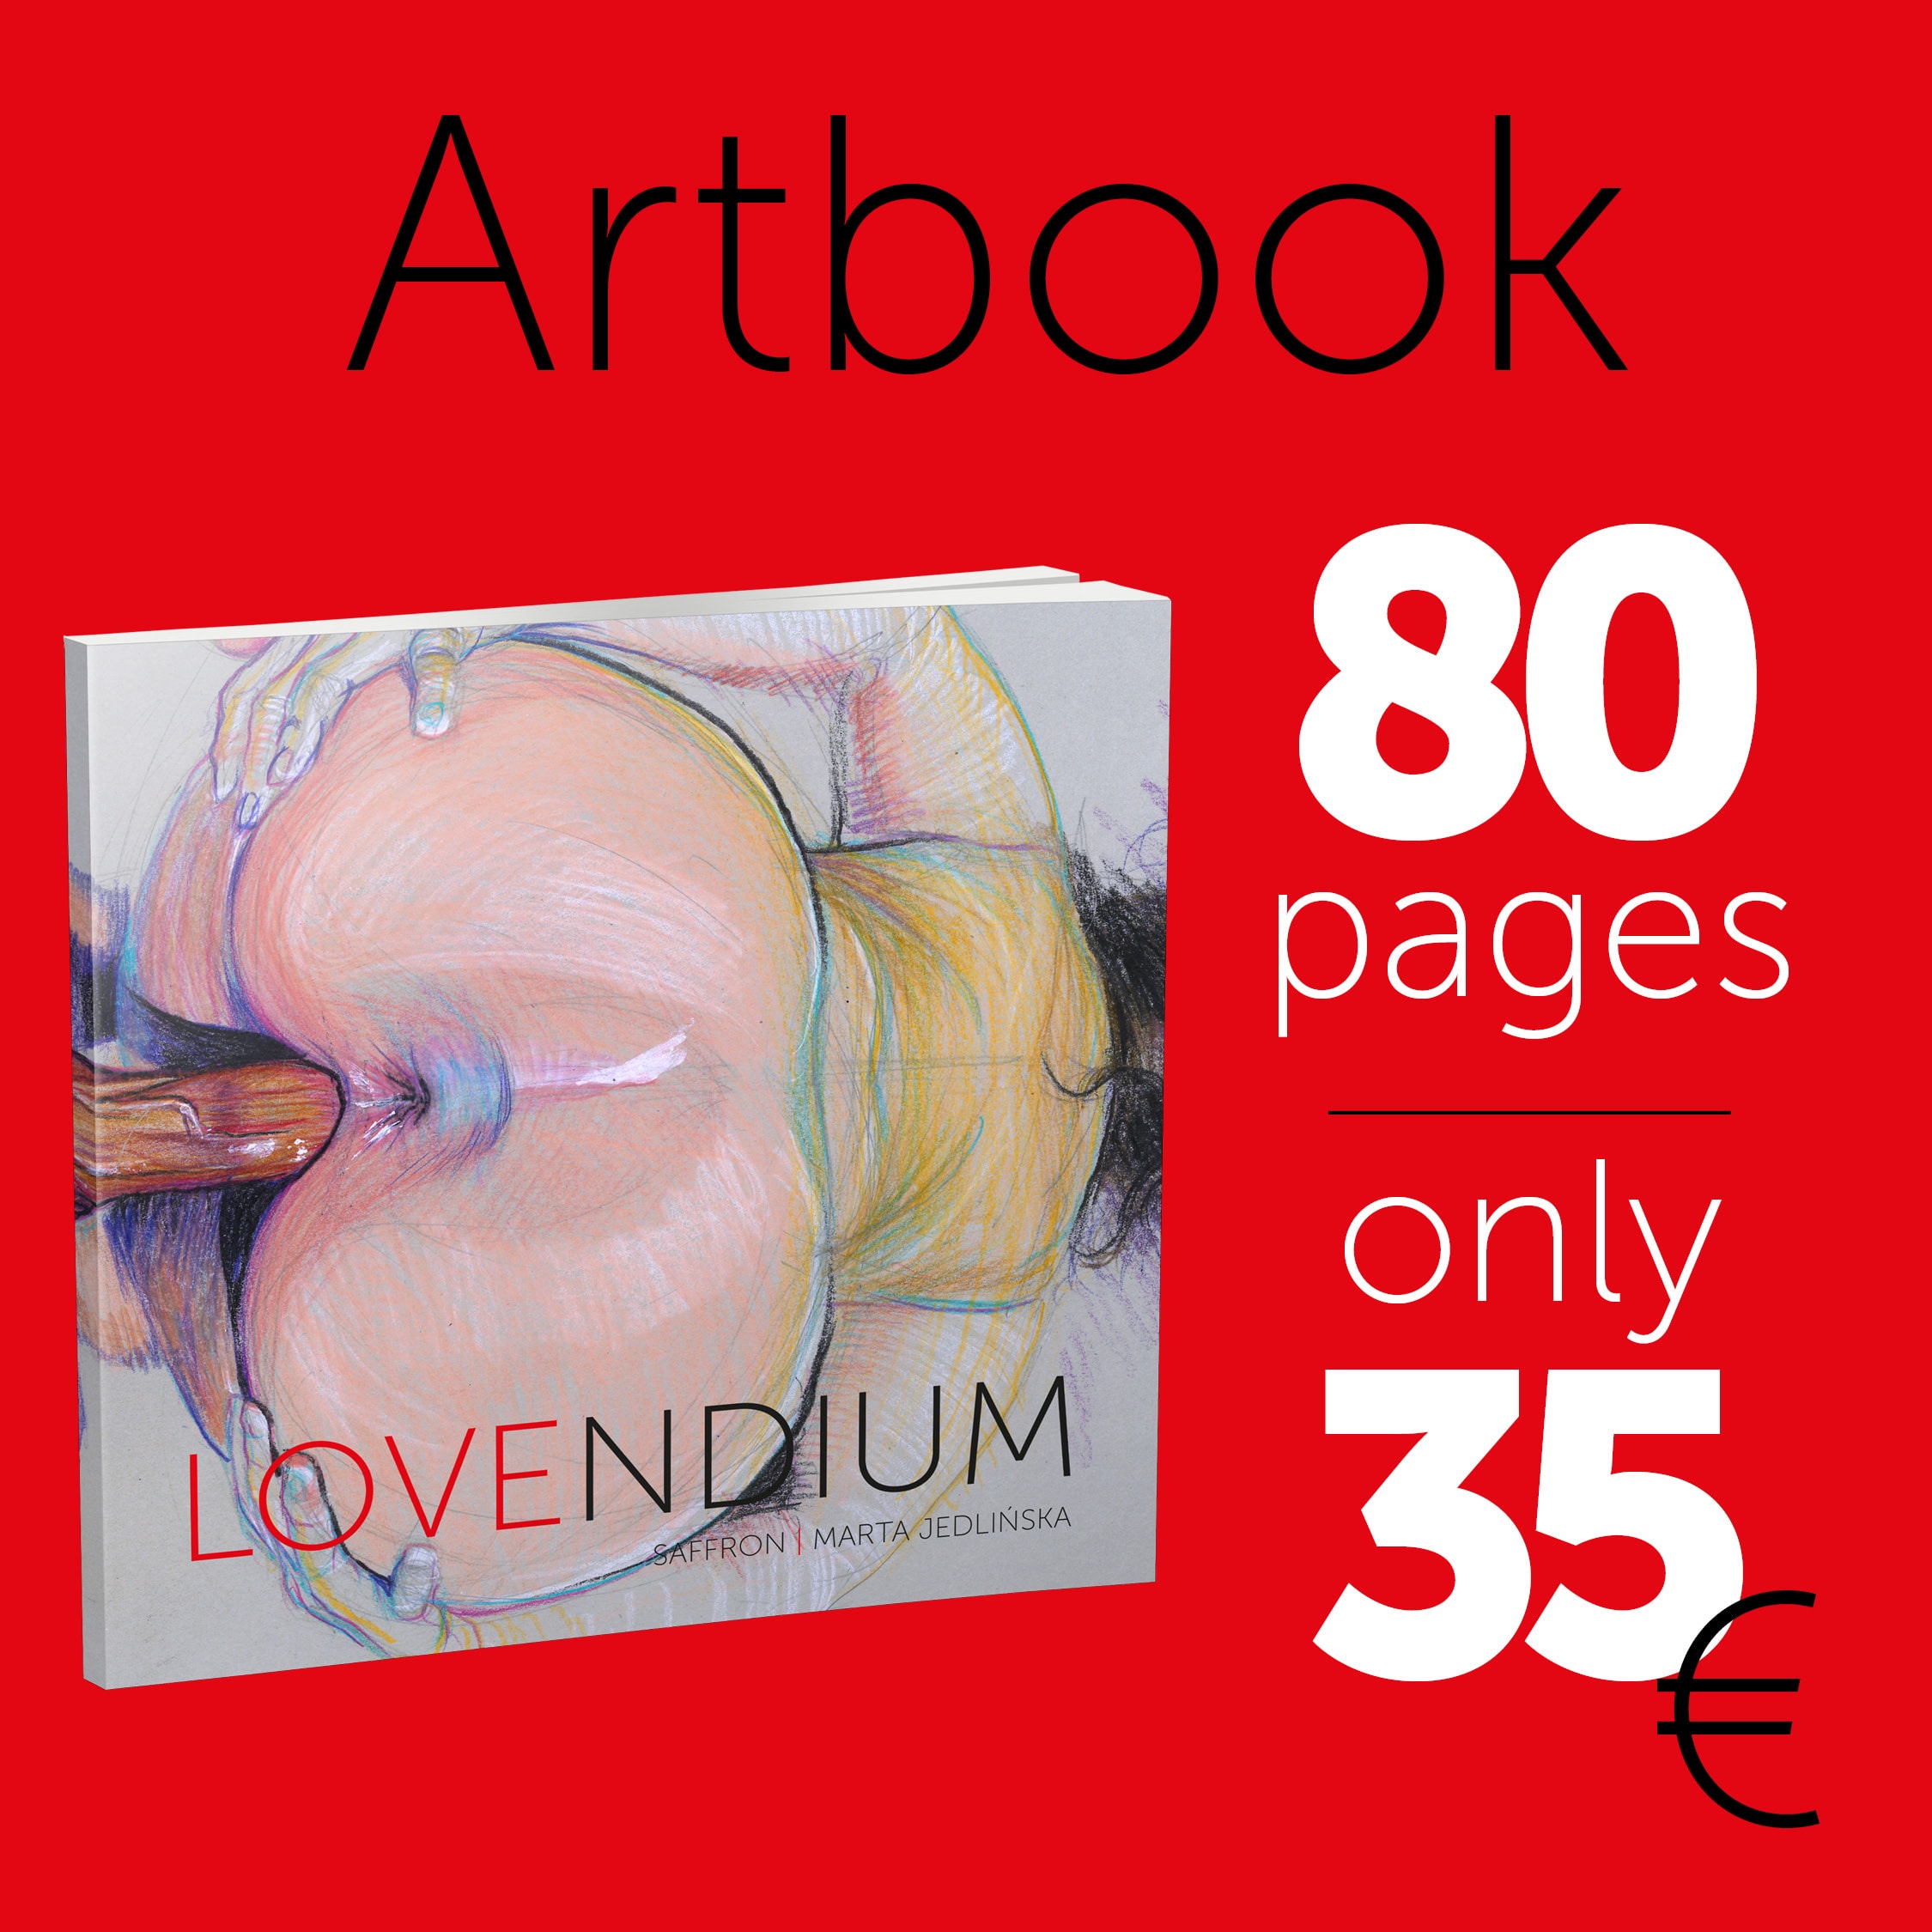 Artbook - LOVENDIUM